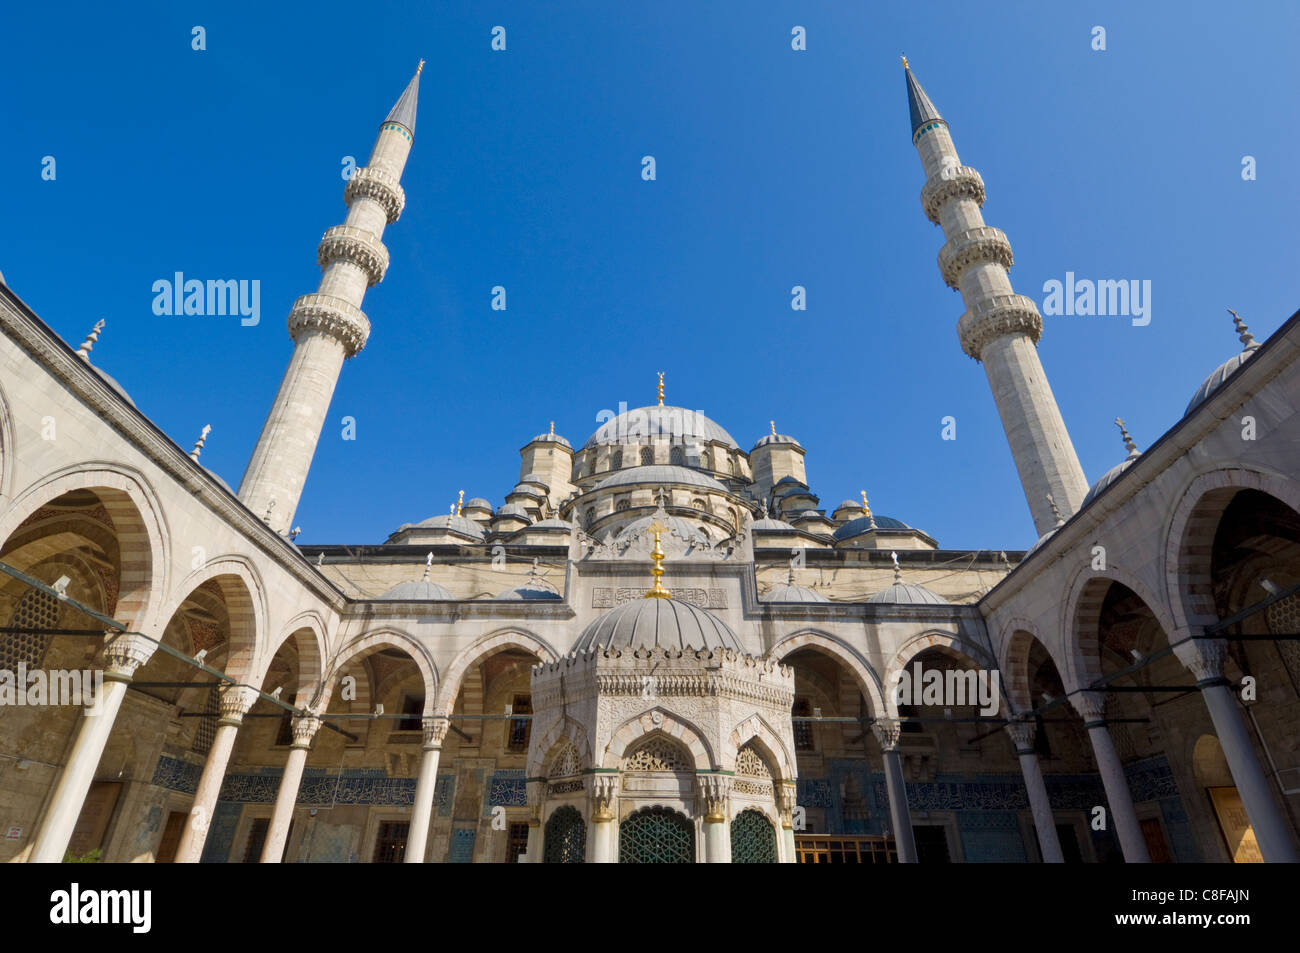 Vue intérieure de la cour et la fontaine des ablutions de la Yeni Cami (la nouvelle mosquée, Eminonu, Istanbul, Turquie Banque D'Images